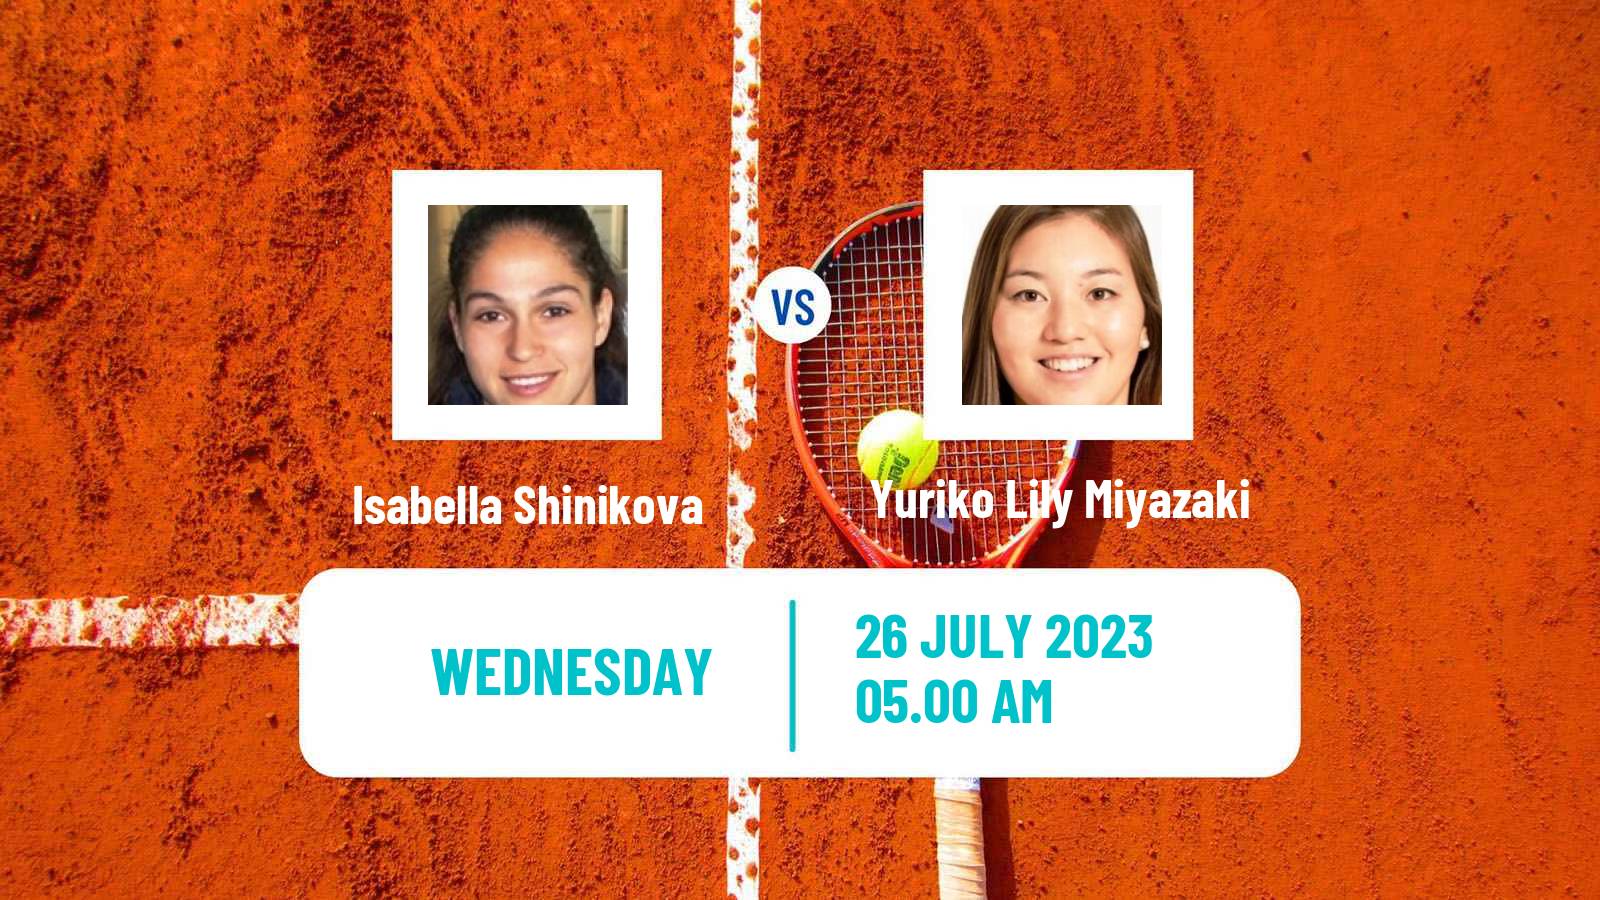 Tennis ITF W100 Figueira Da Foz Women Isabella Shinikova - Yuriko Lily Miyazaki